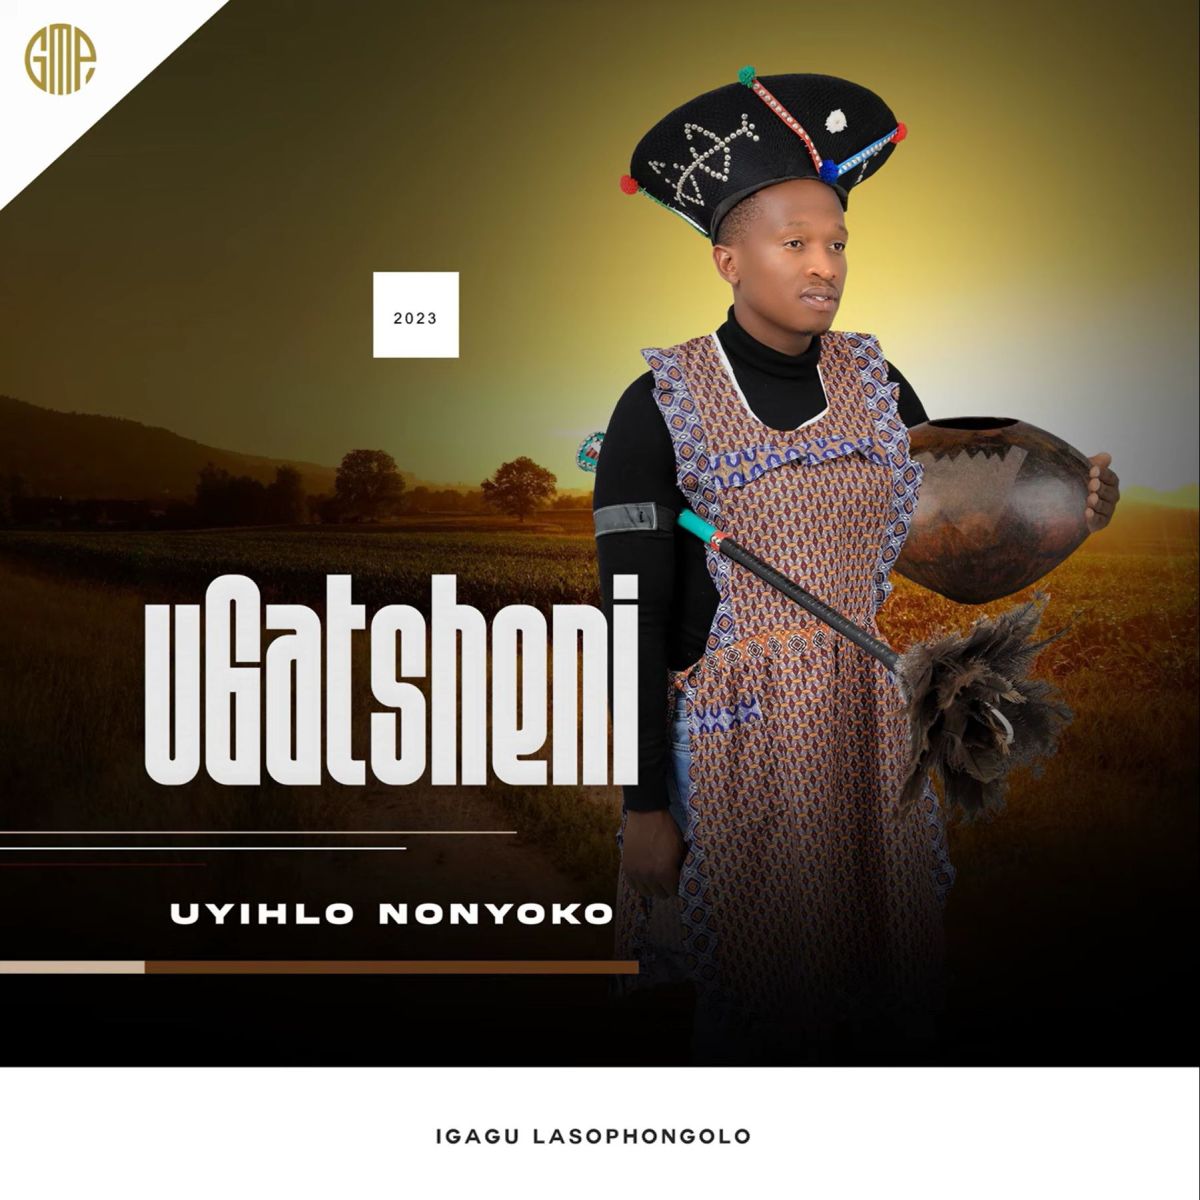 Ugatsheni – Uyihlo Nonyoko Album